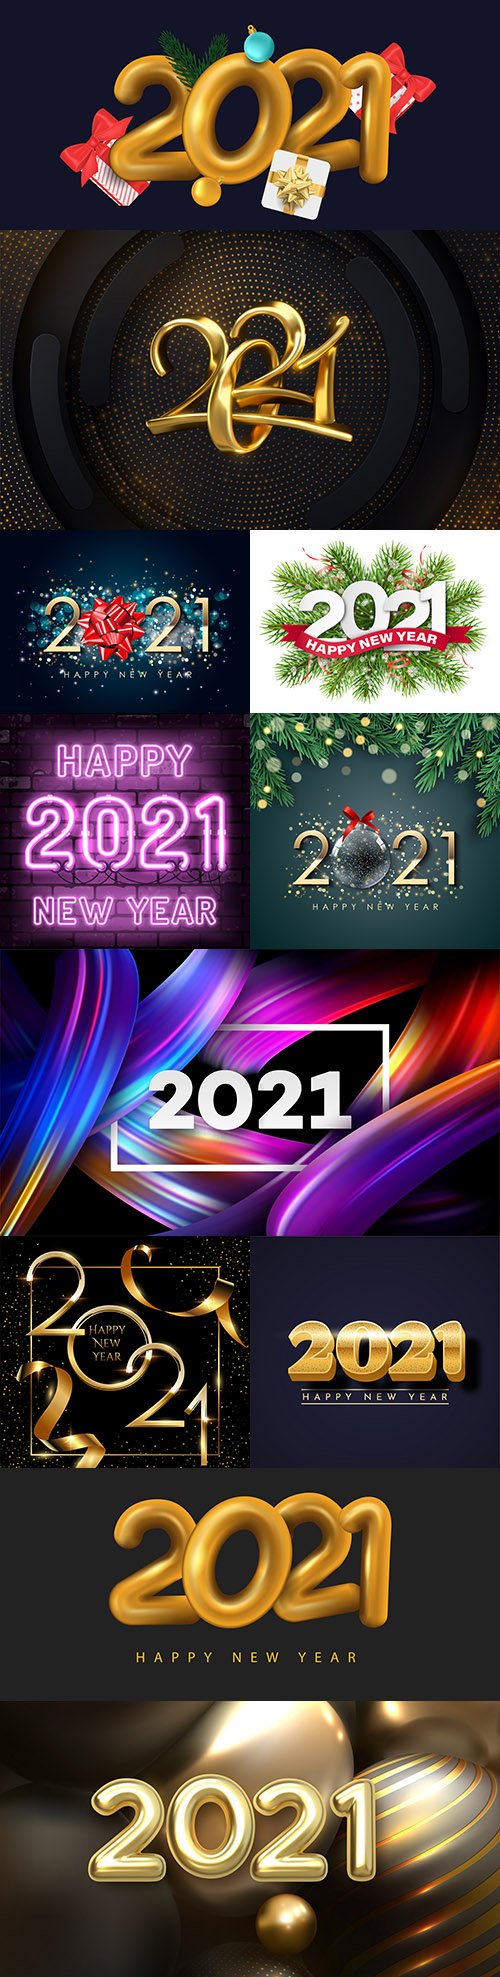 Happy New Year 2021 decorative design inscription